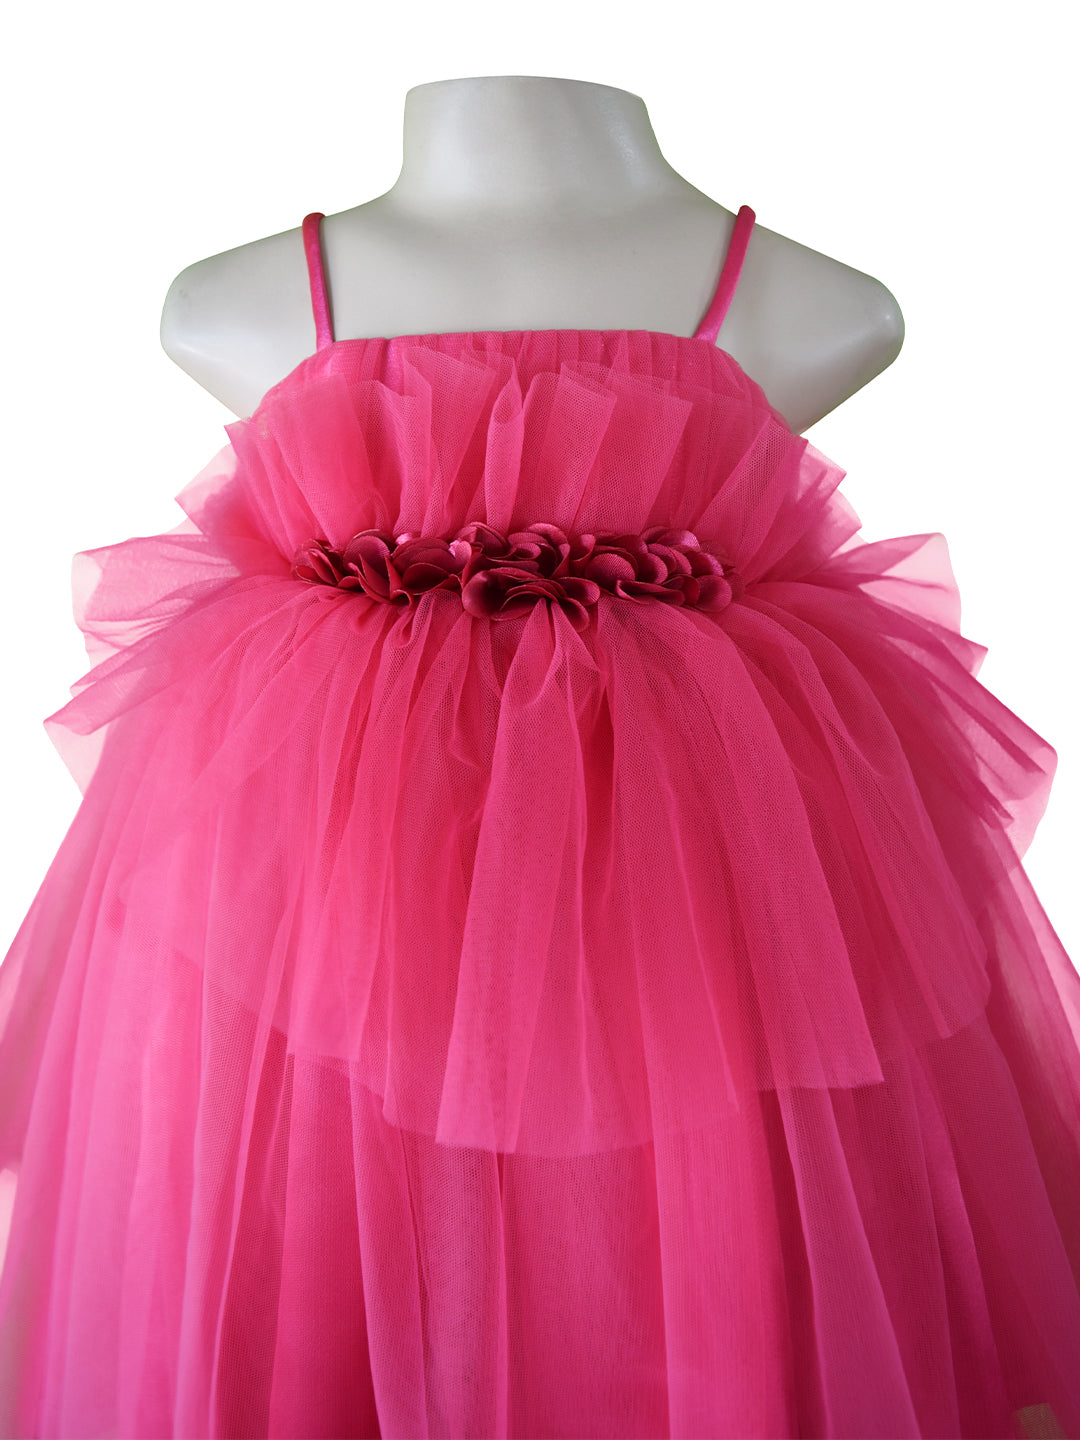 Buy MACWIN Girls' Dress for 1-8 Years/Sleeveless Checks Designer Midi Black  White at Amazon.in